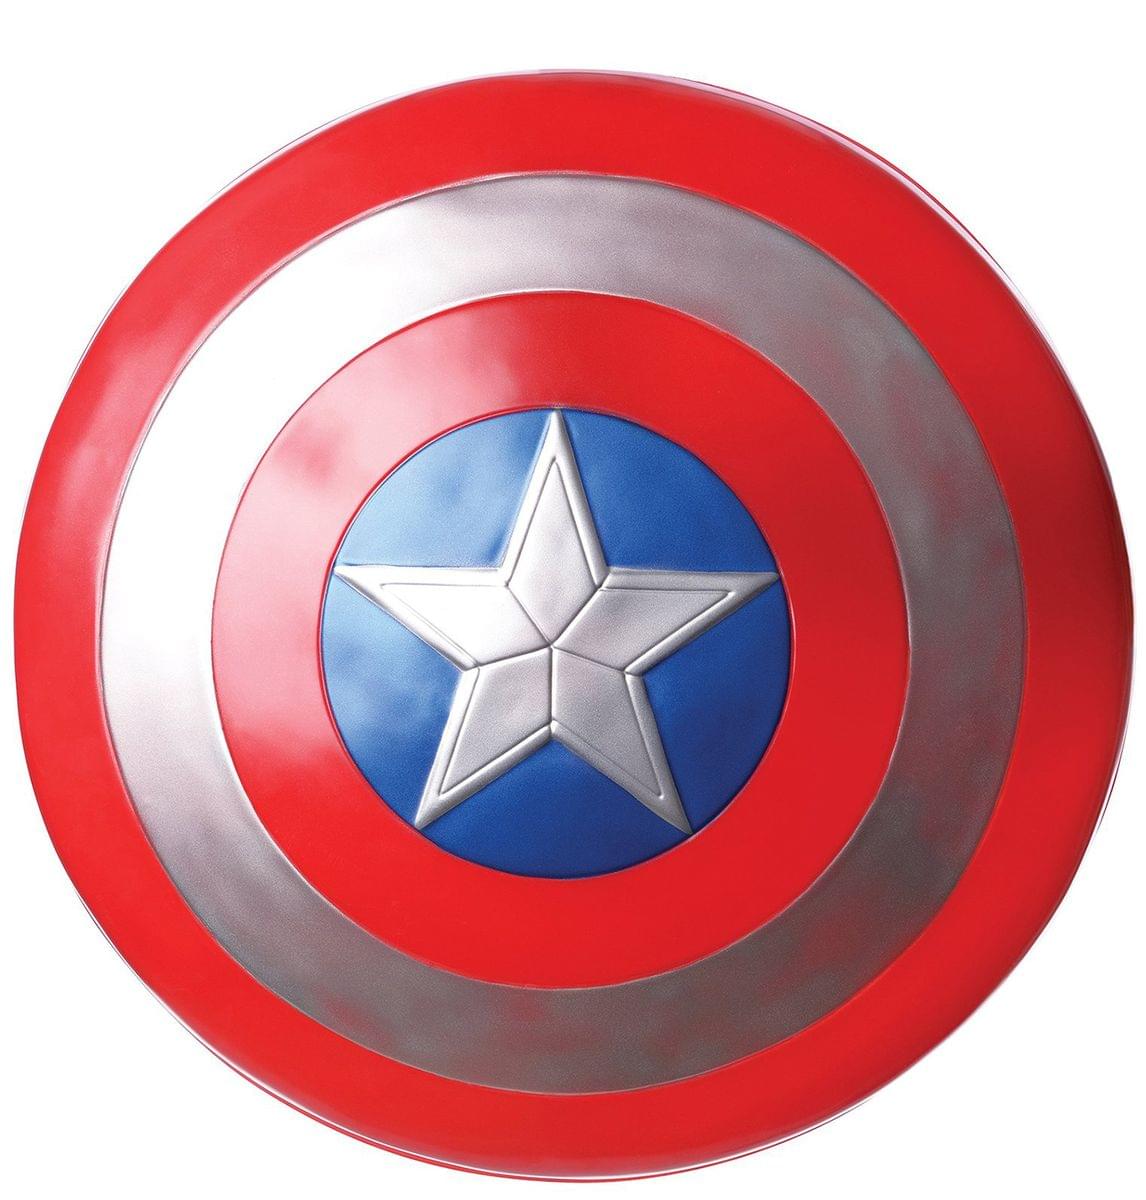 Marvel Avengers 2 Captain America 24" Adult Costume Shield